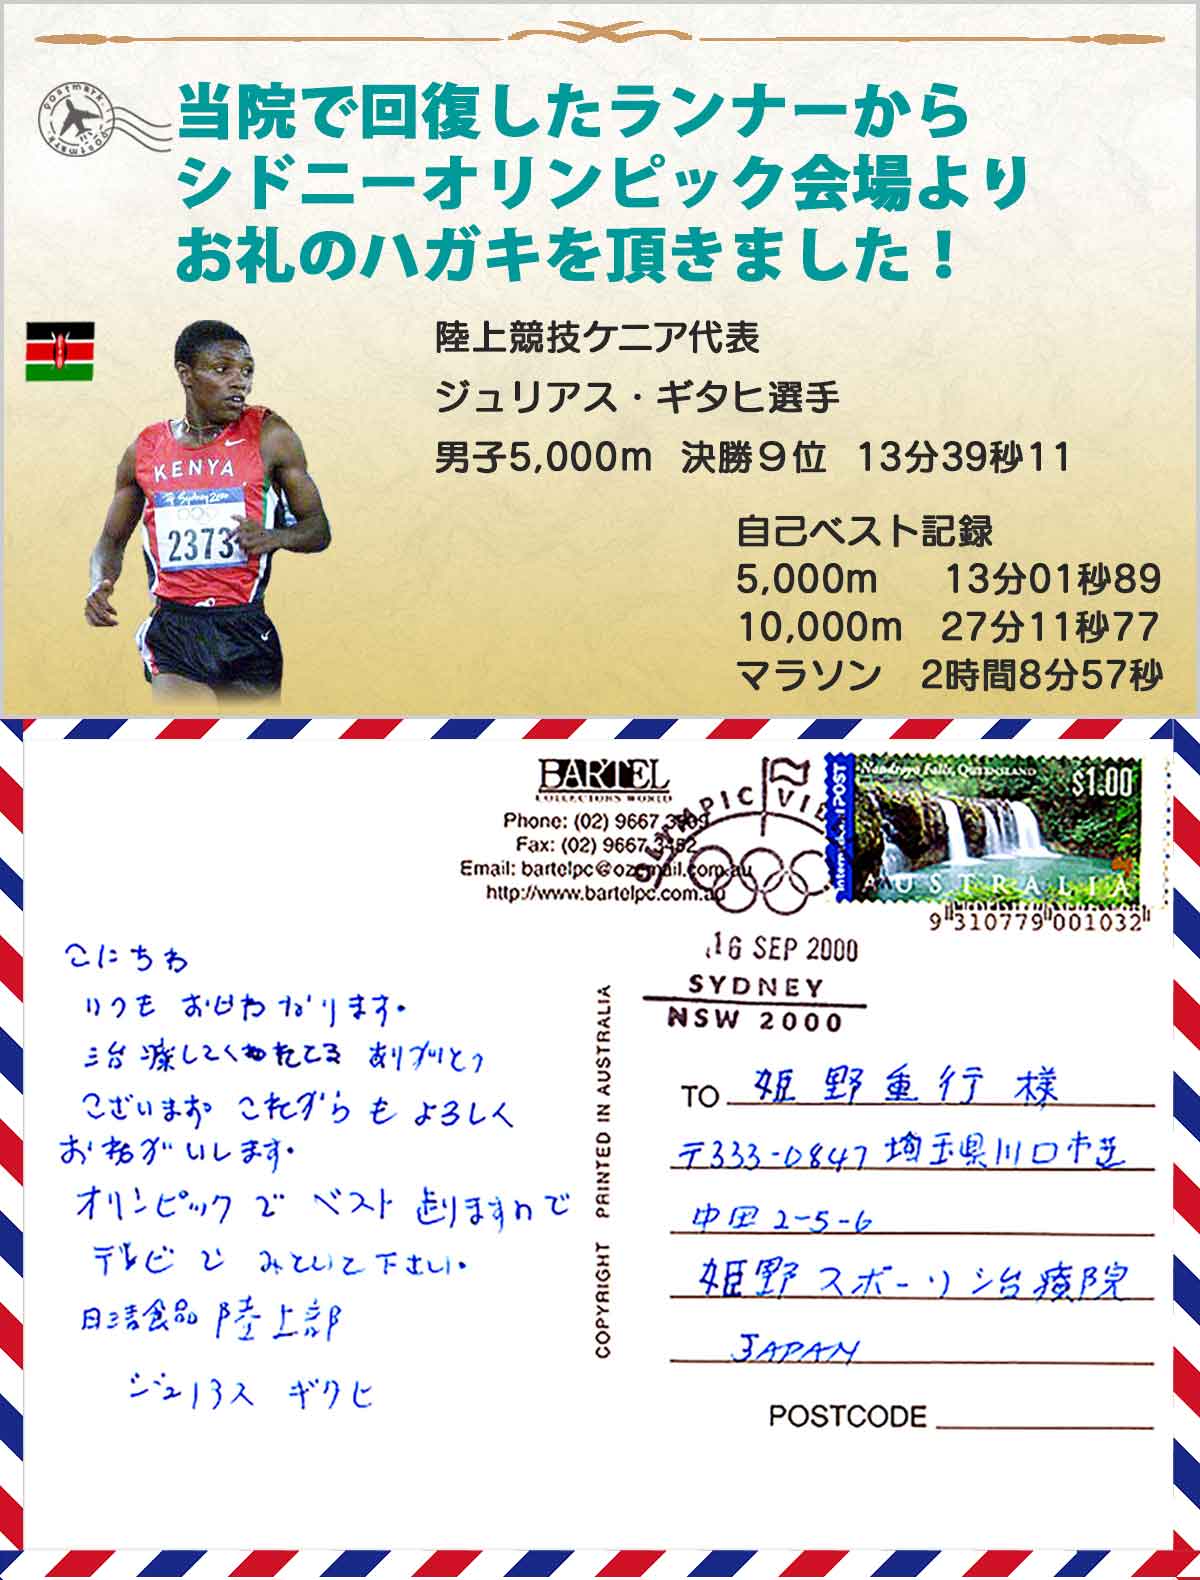 ケニア人オリンピックランナーの写真、シドニーオリンピックから届いたお礼のハガキ